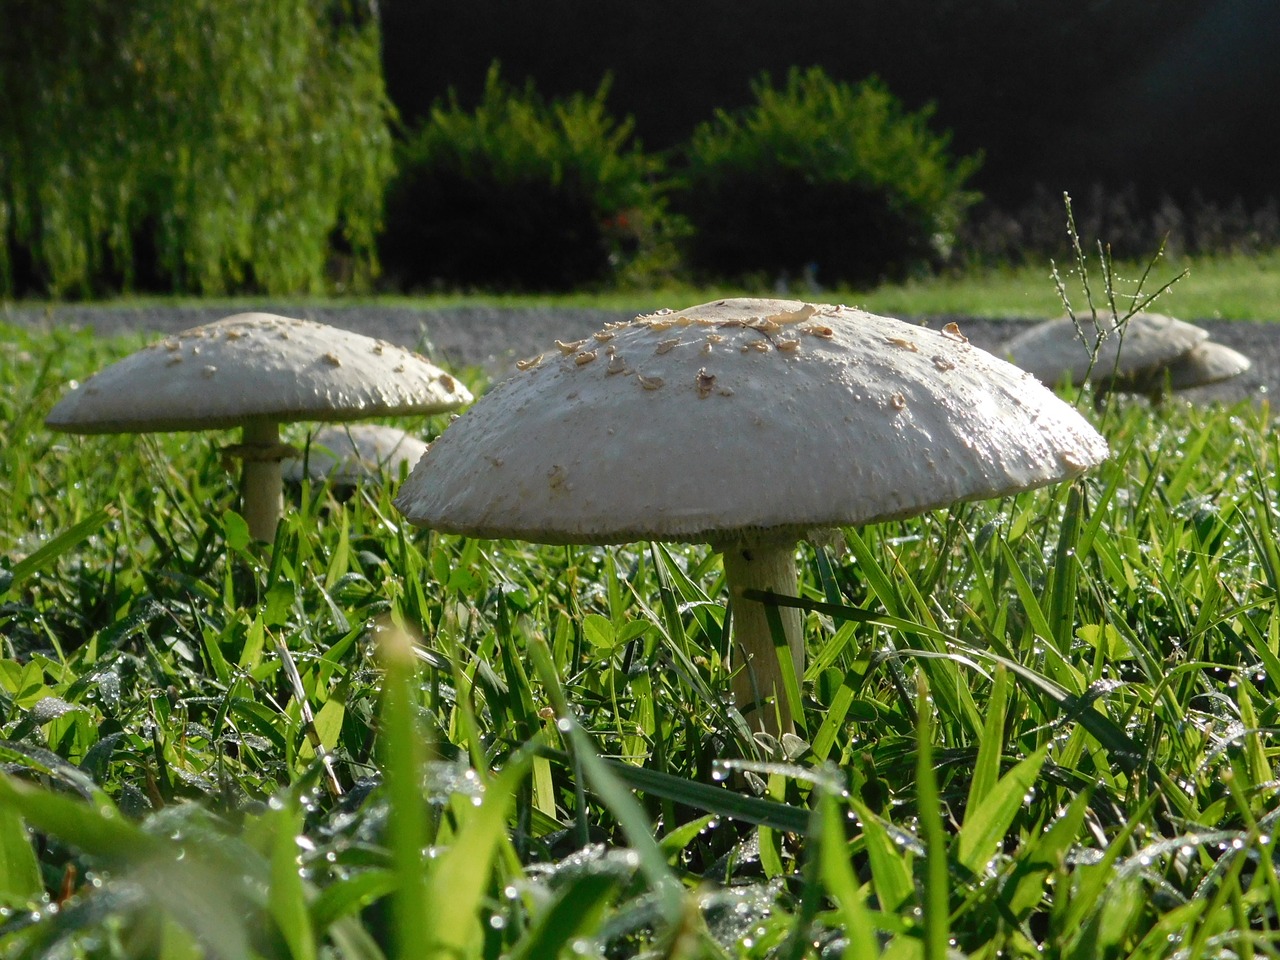 mushroom grass nature free photo